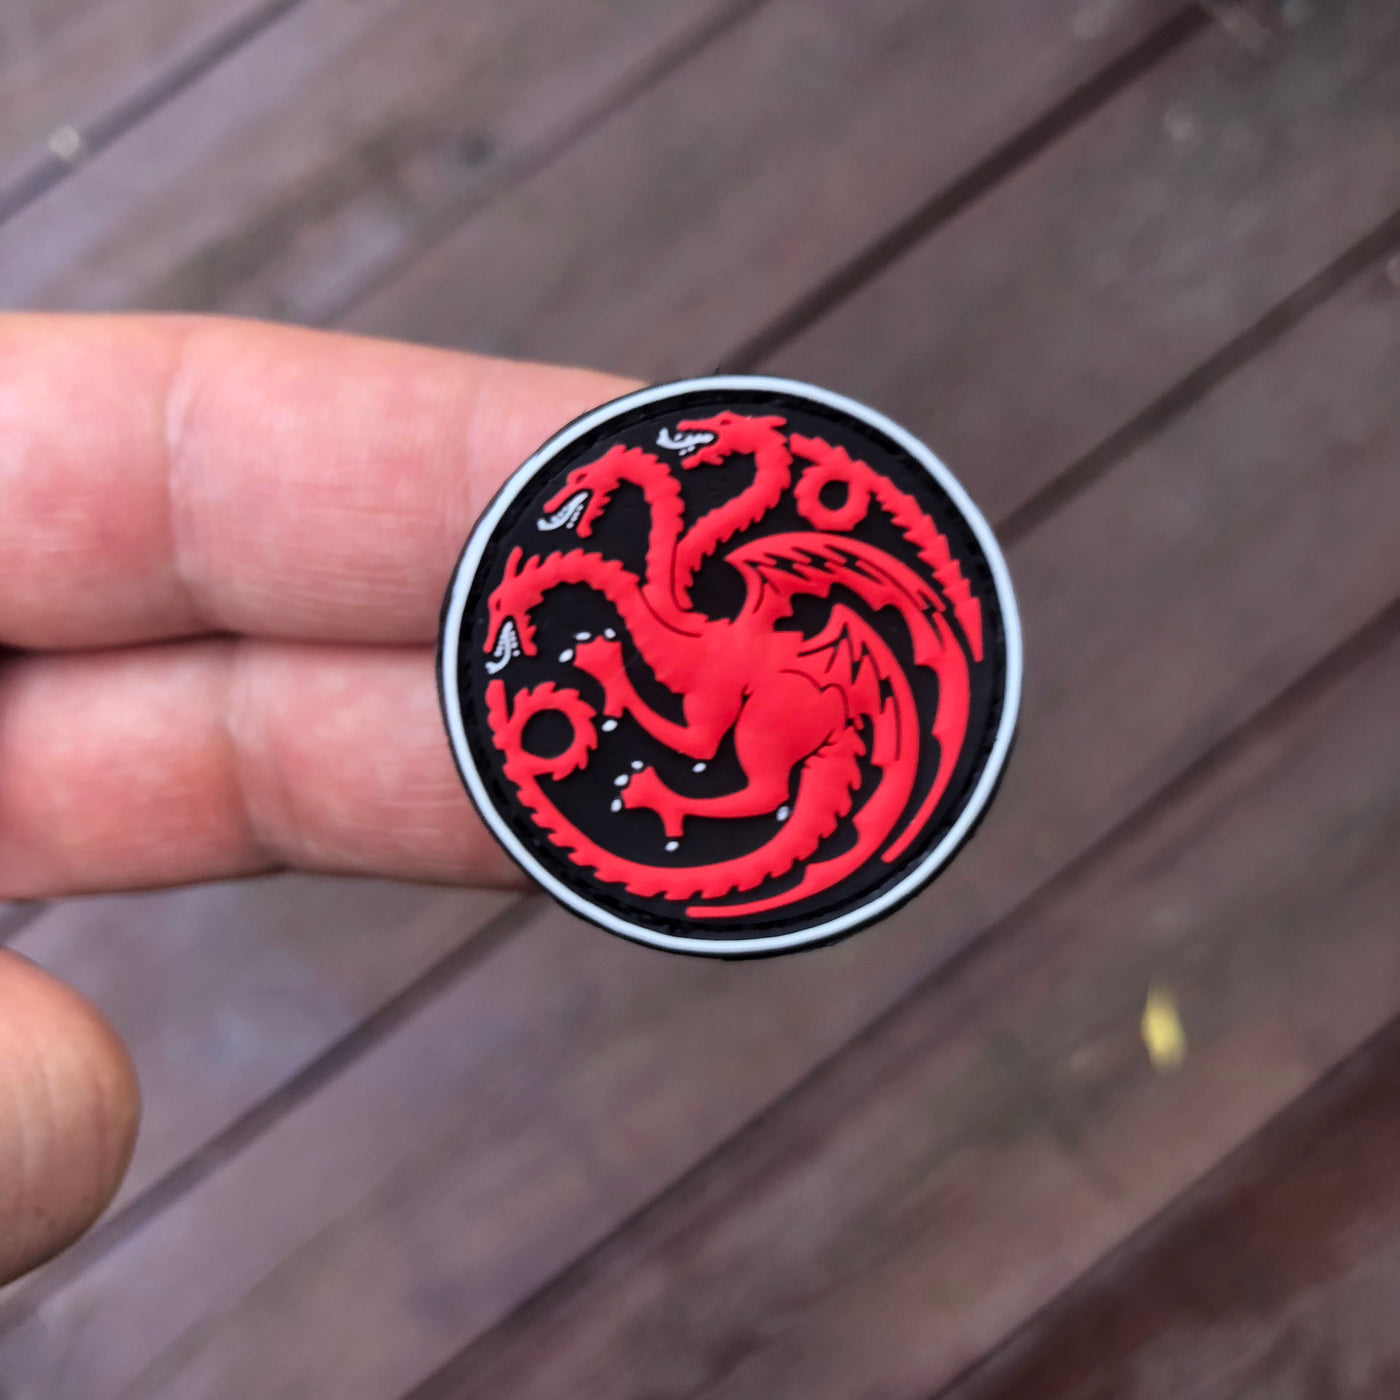 The Targaryen Dracarys PVC patch